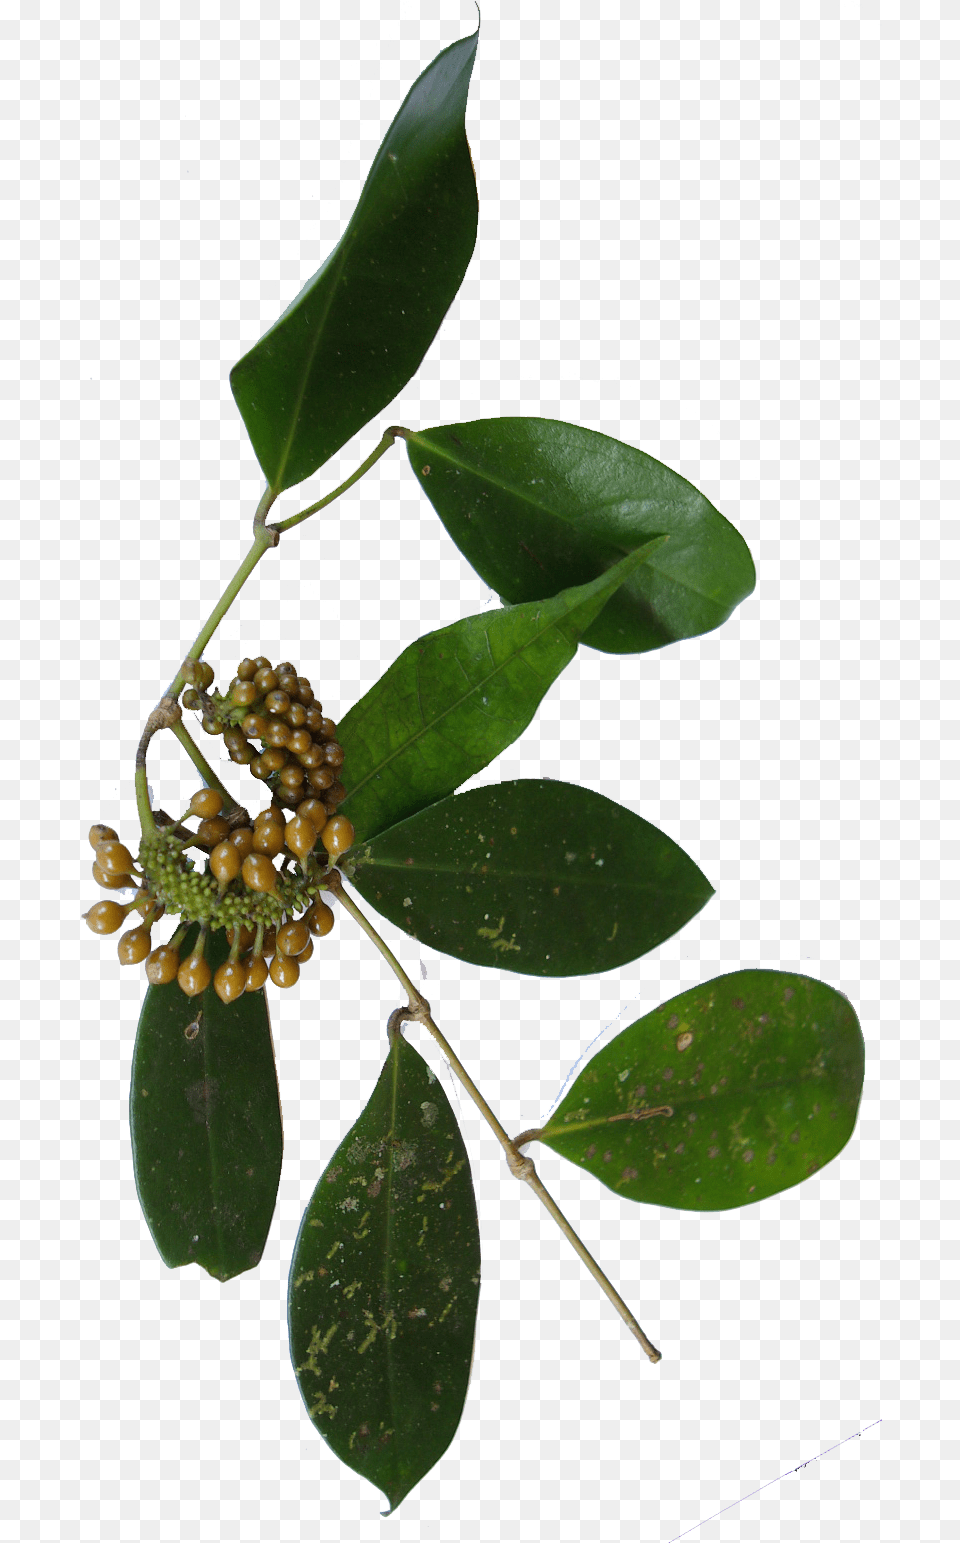 Wild Pepper Bunch Fleur Poivre Sauvage, Leaf, Plant, Tree, Annonaceae Free Transparent Png